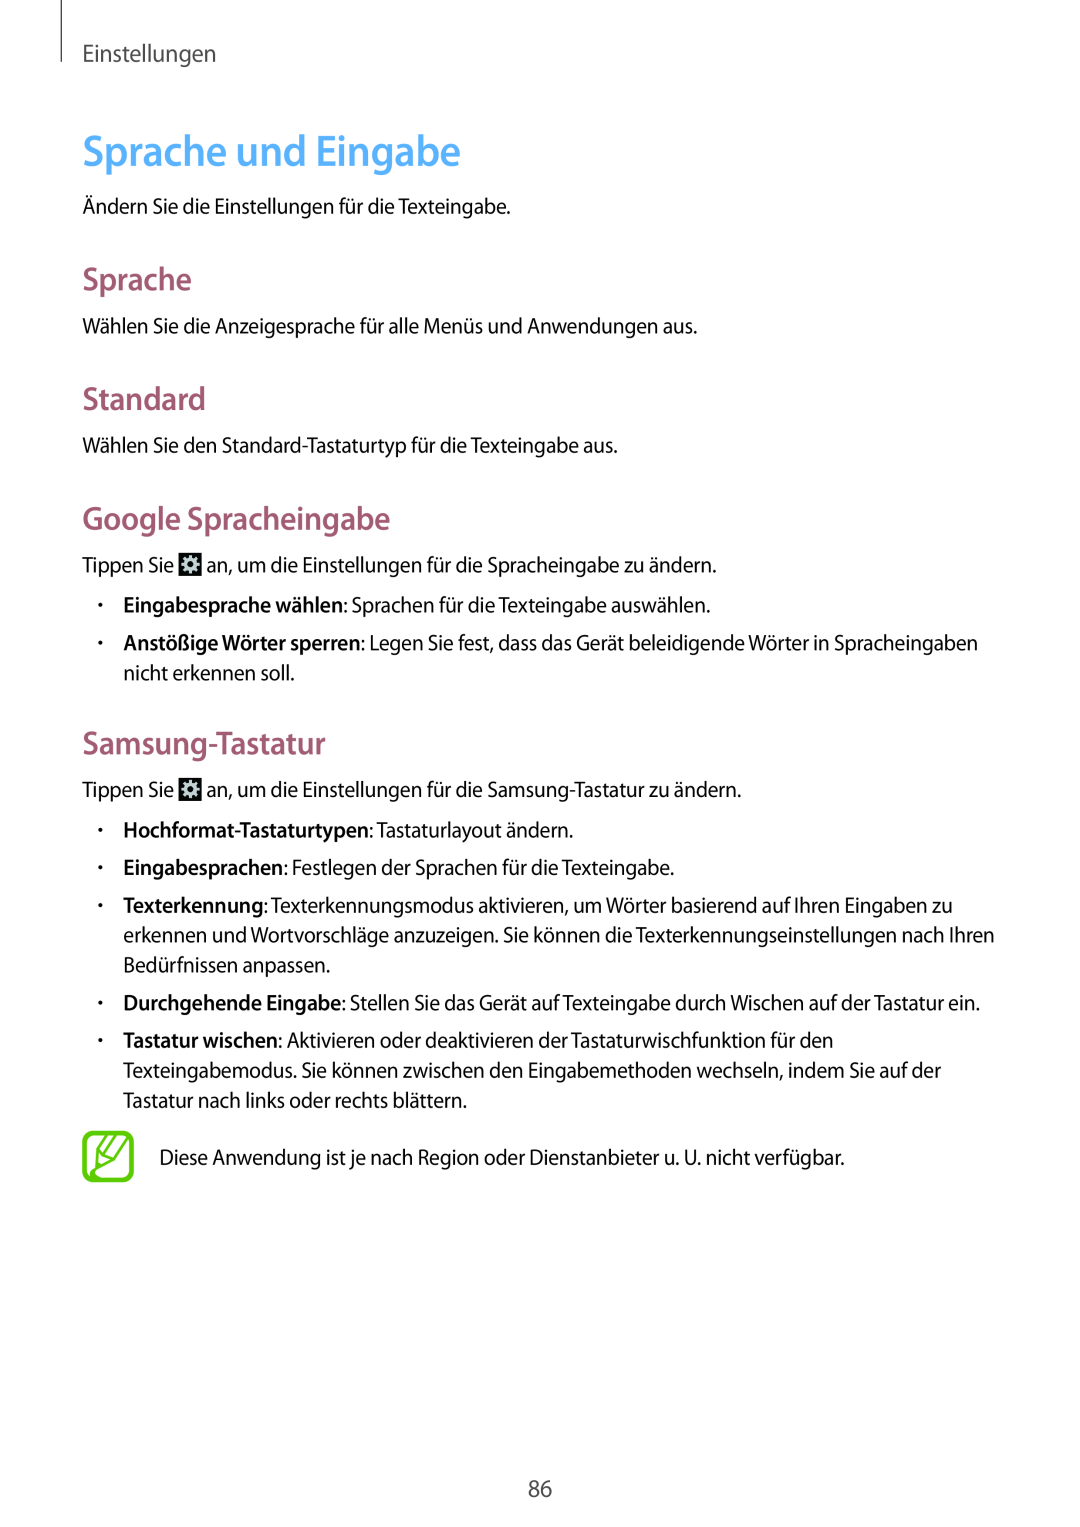 Samsung GT-S5280LKAMEO manual Sprache und Eingabe, Standard, Google Spracheingabe, Samsung-Tastatur, Einstellungen 